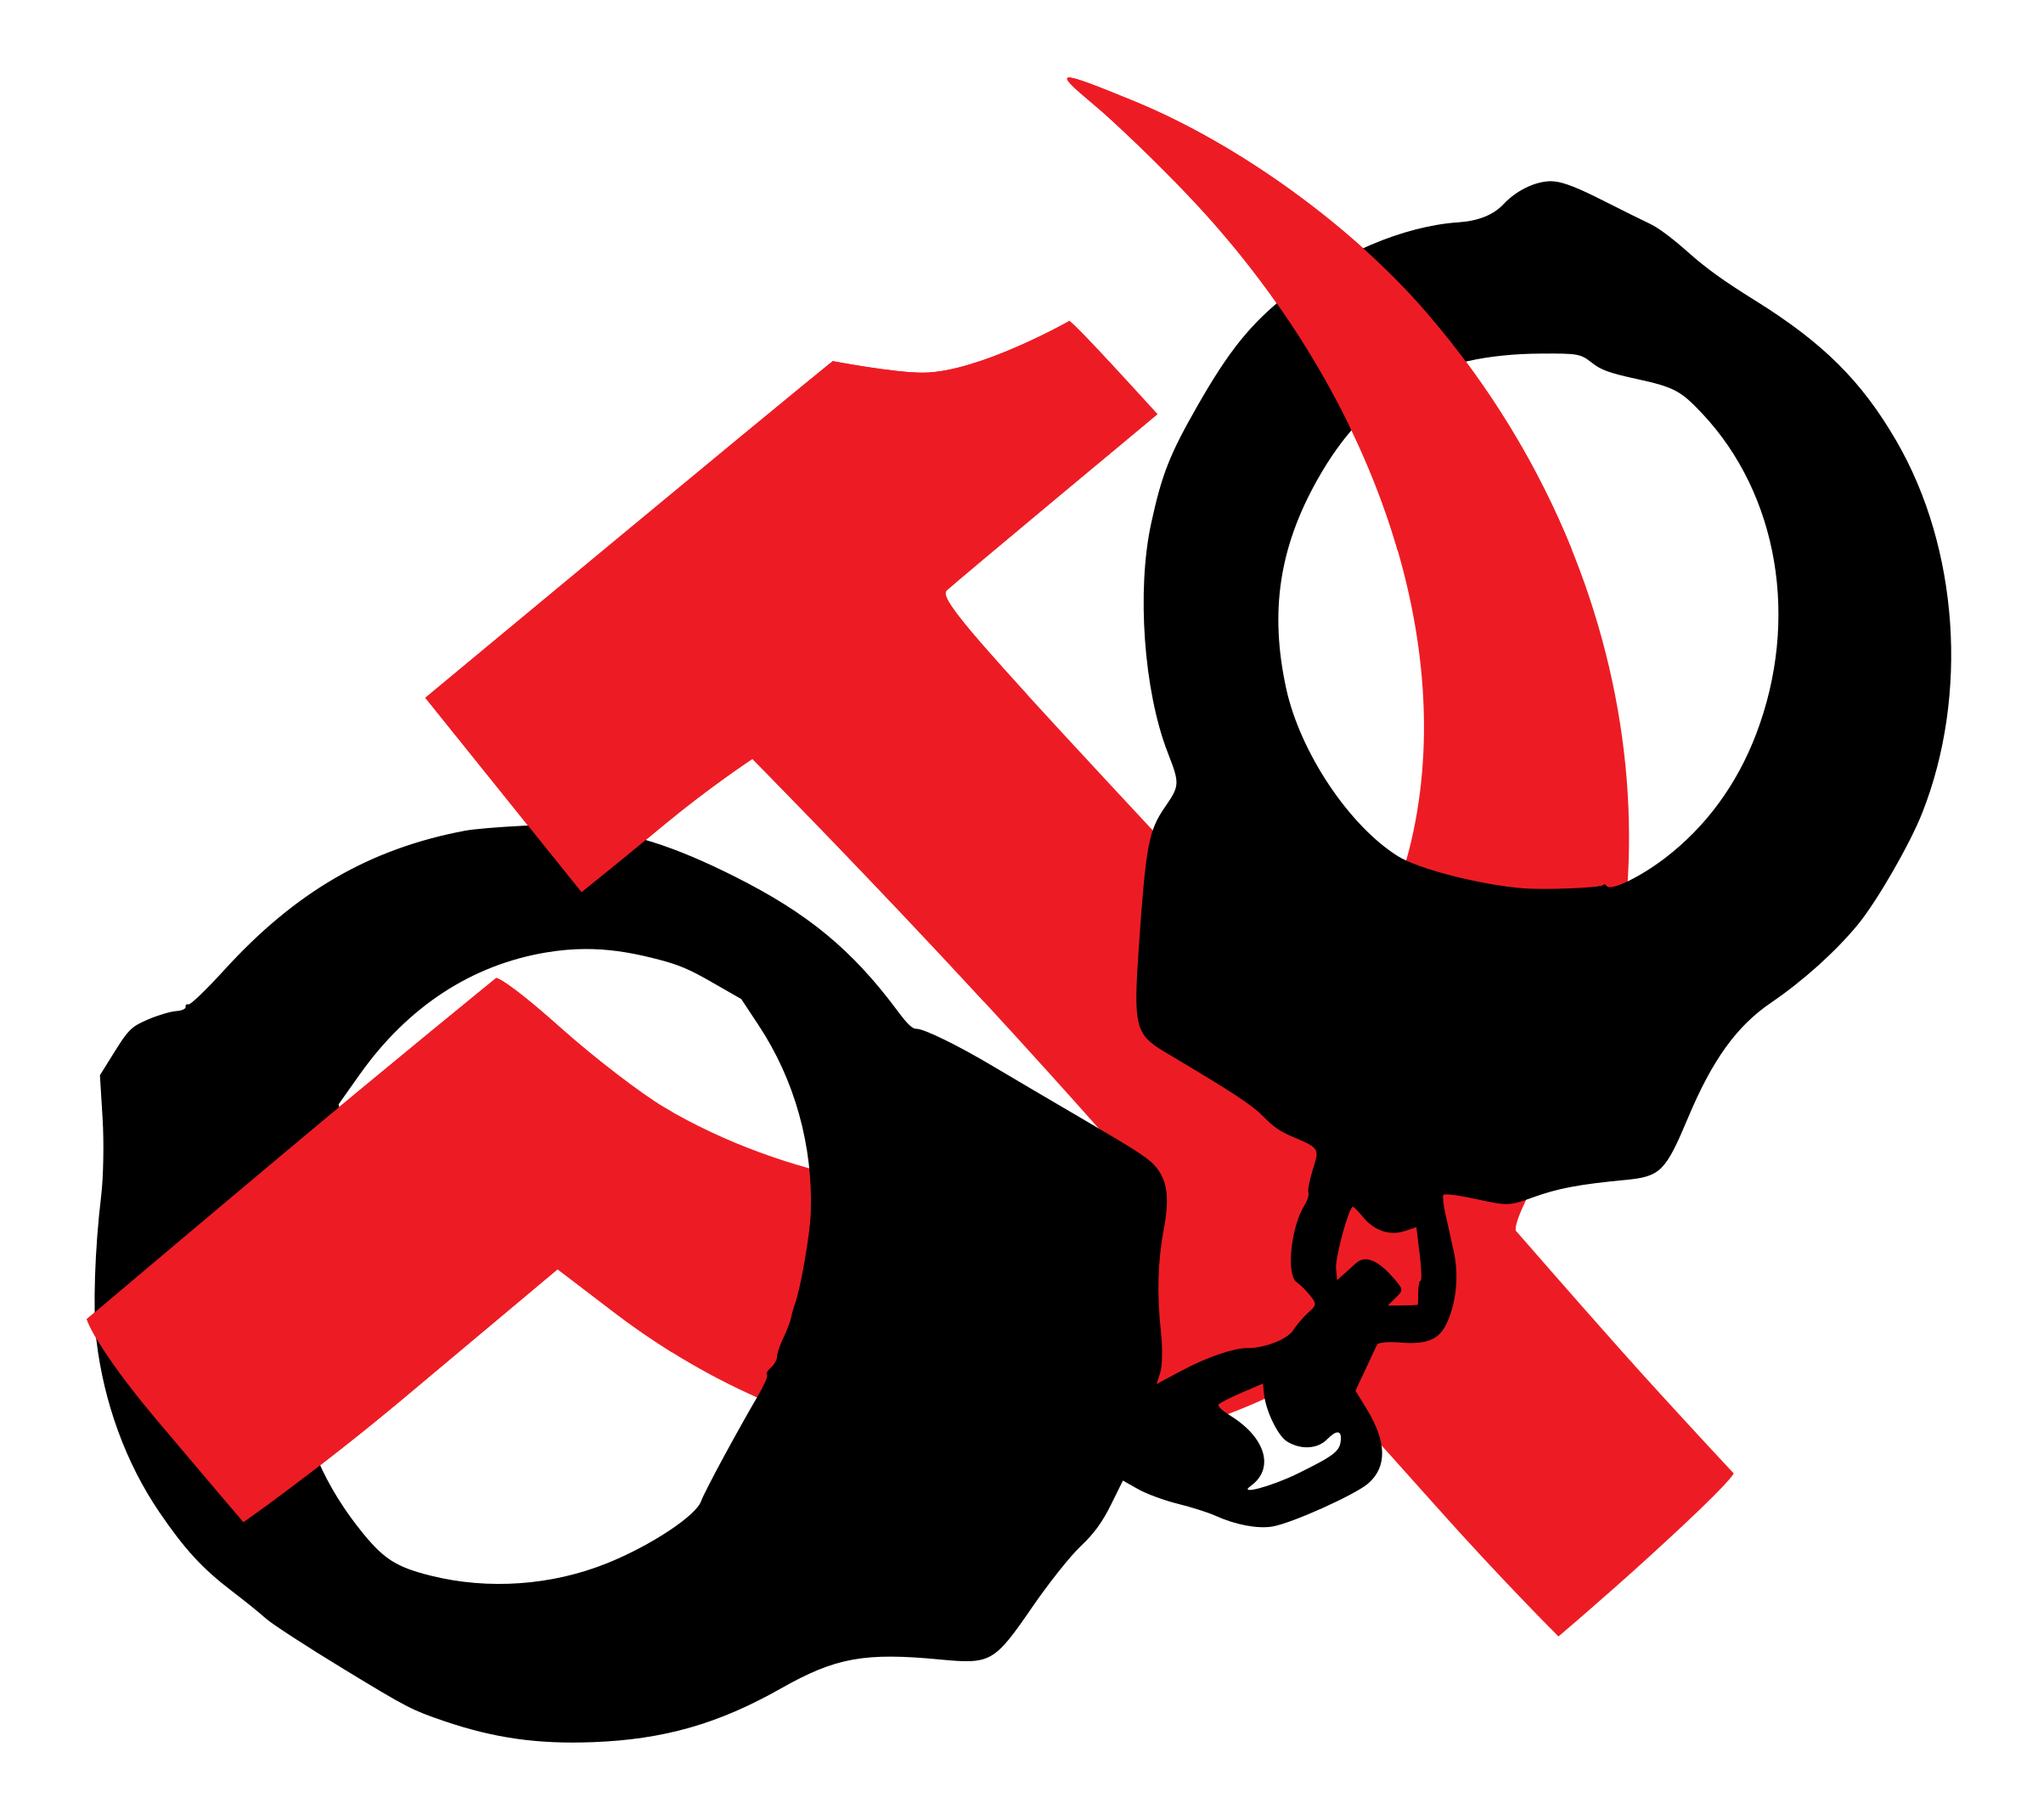 against anti communism Clip arts